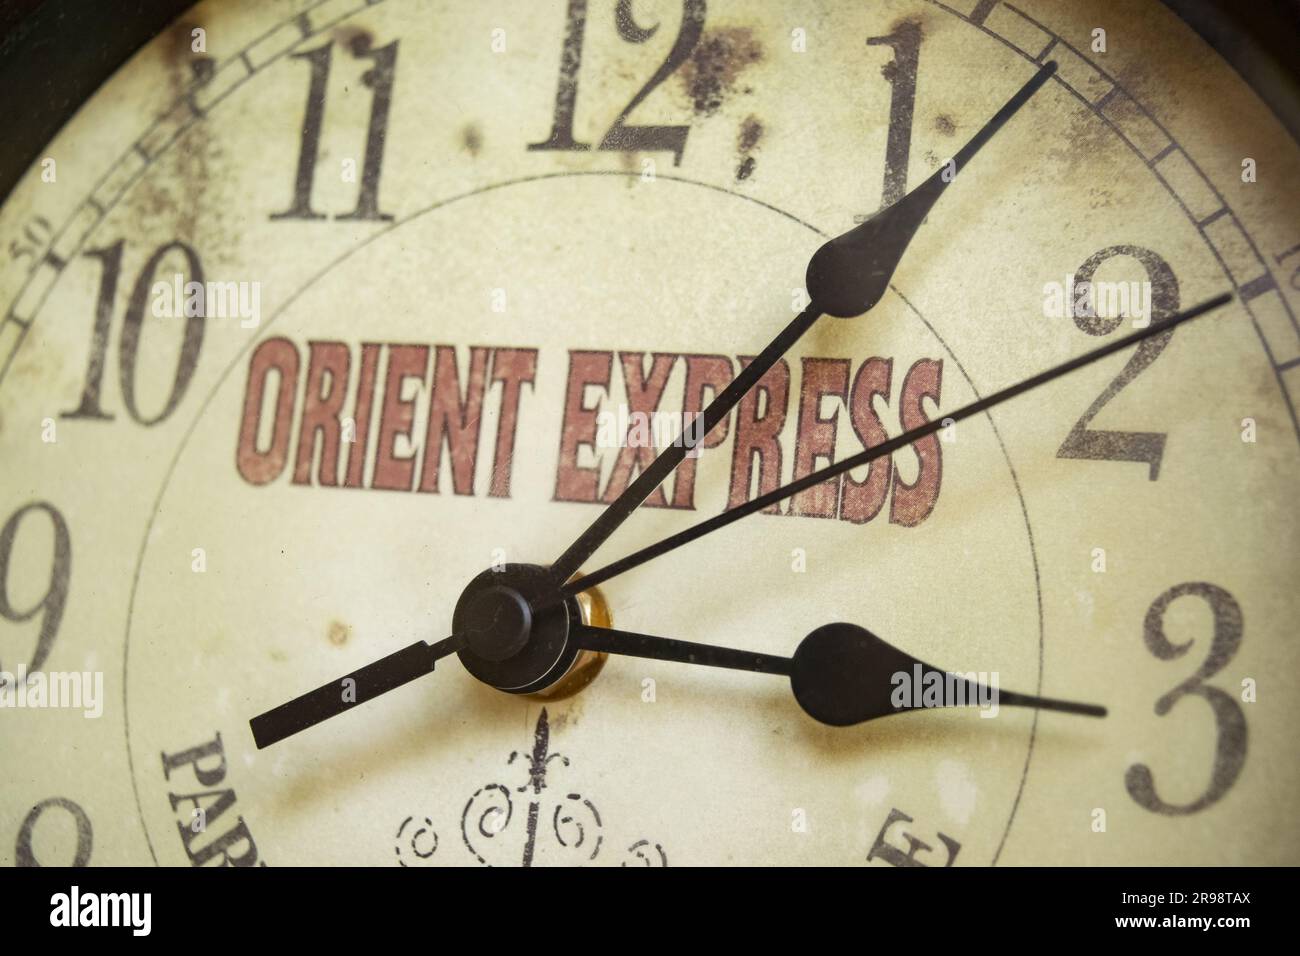 Orienter le concept de voyage express avec une vieille montre avec l'écriture sur le cadran Banque D'Images